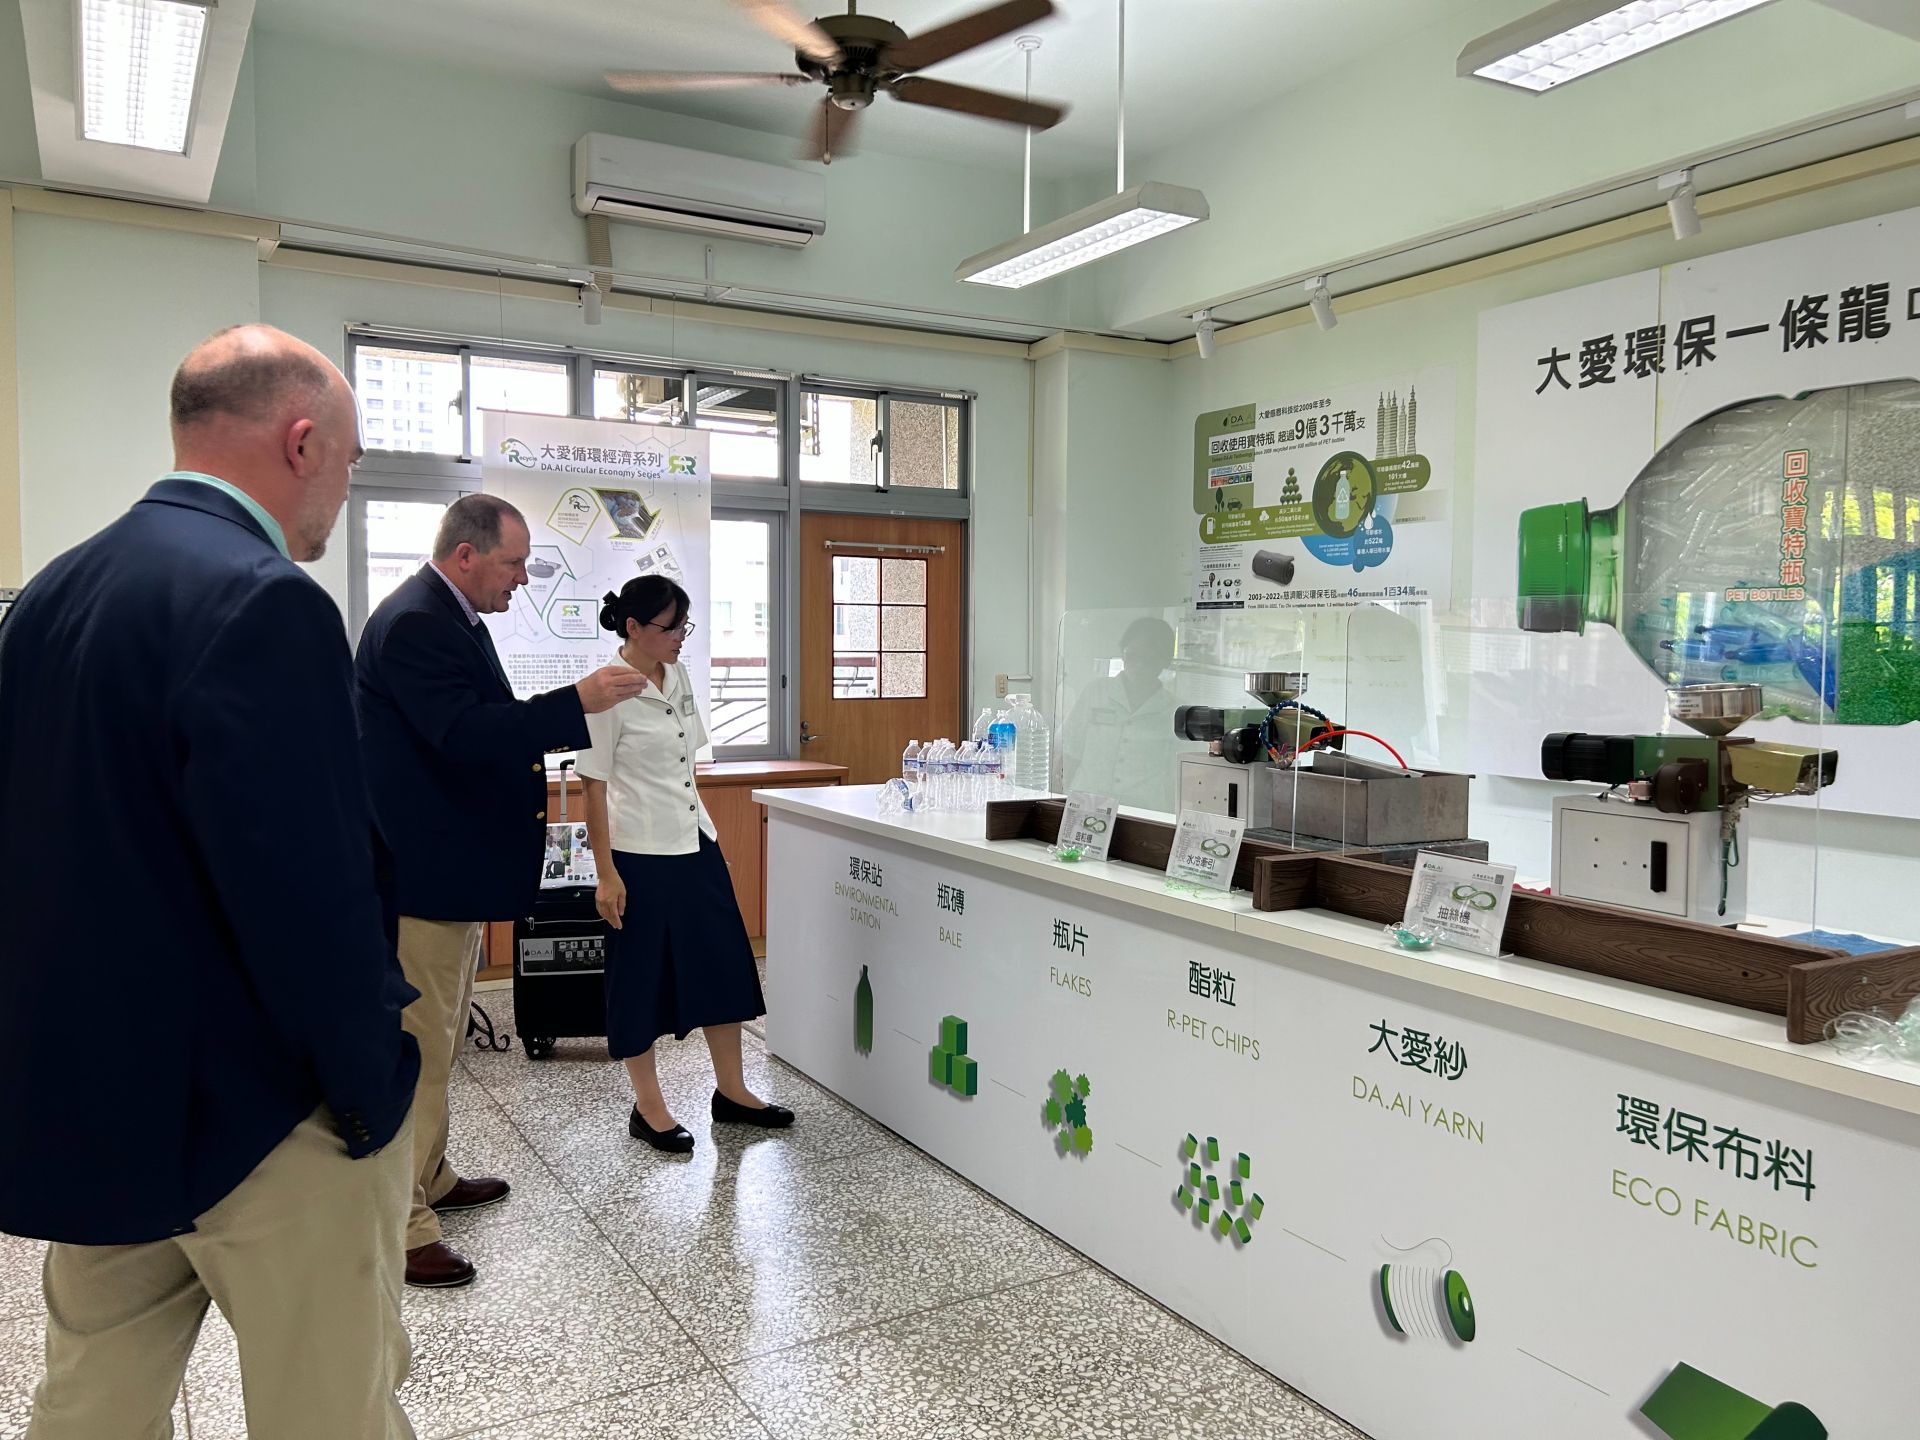 臺南慈中2024年建置的永續教室有關環保一條龍的展示讓來訪貴賓讚嘆大愛感恩科技在研發設計上的創新理念。